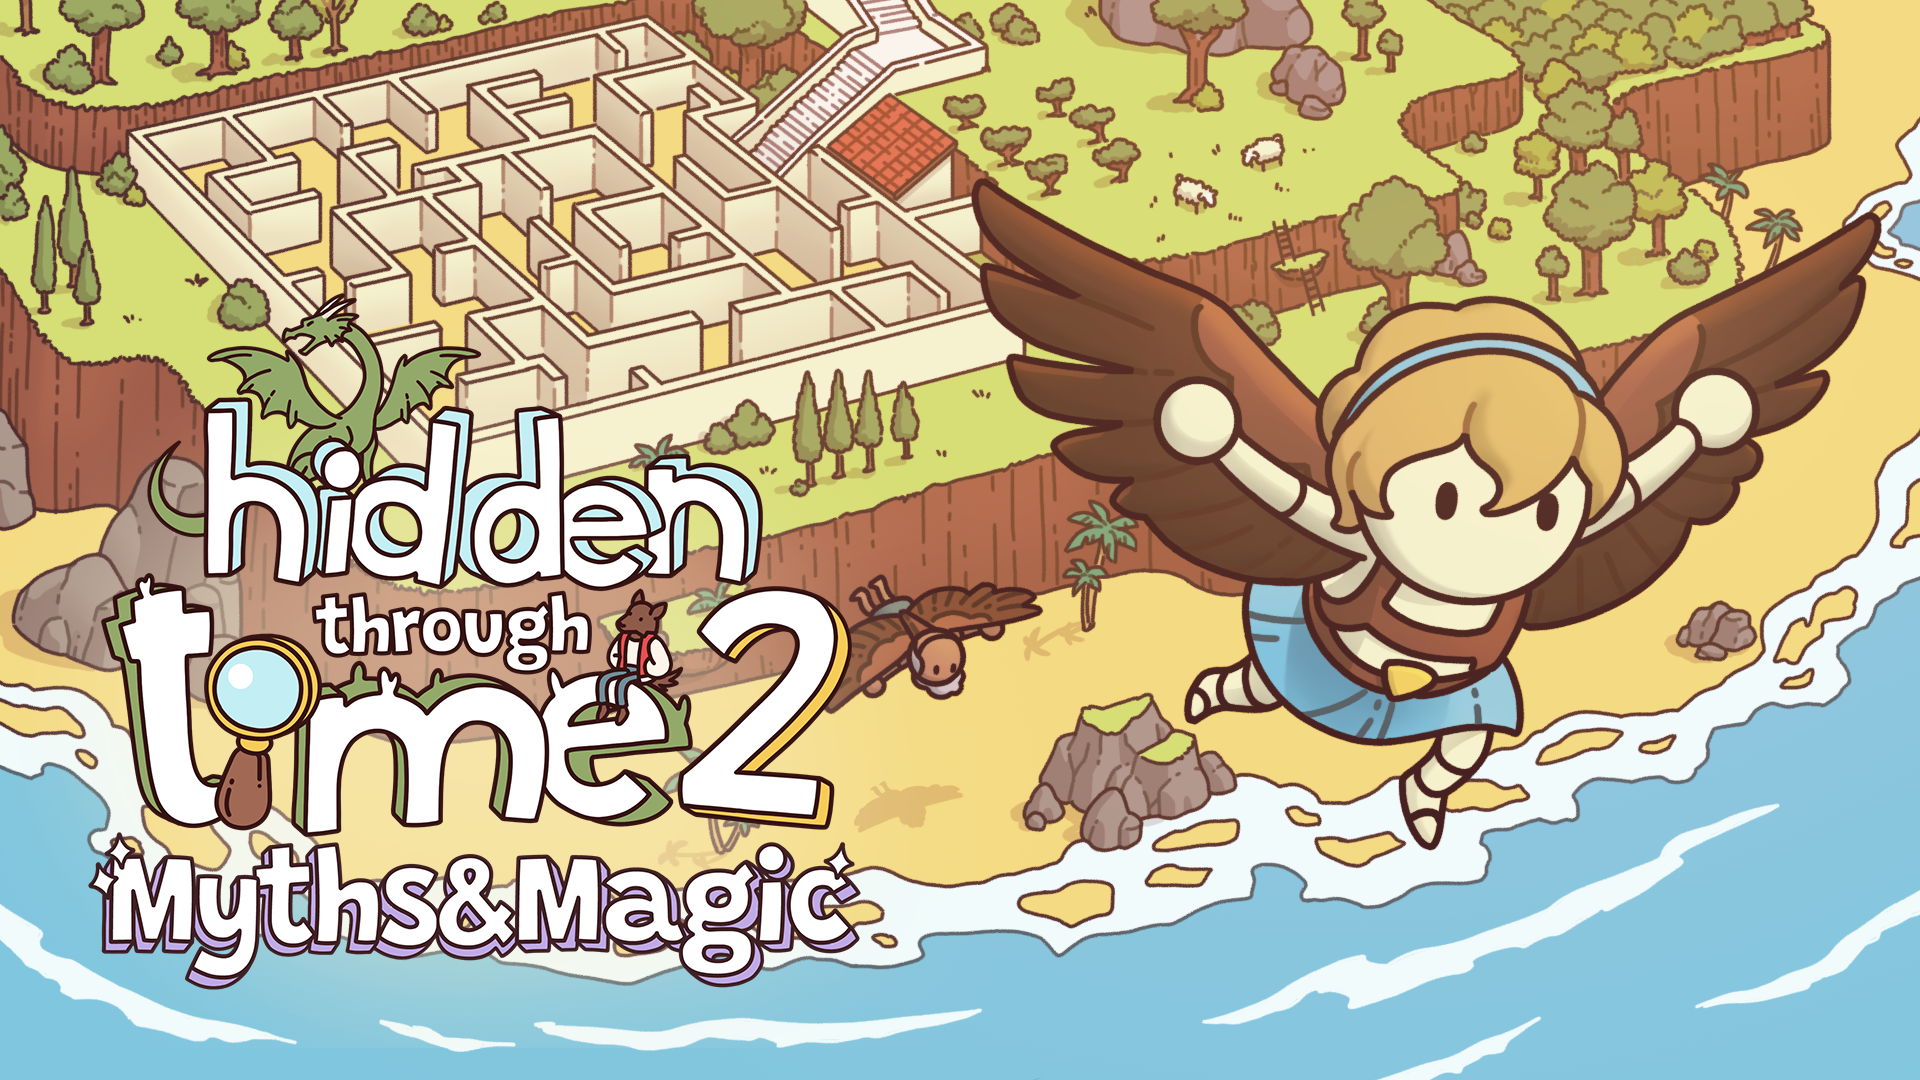 Ontdek betoverende werelden - Hidden Through Time 2: Myths & Magic komt naar consoles!